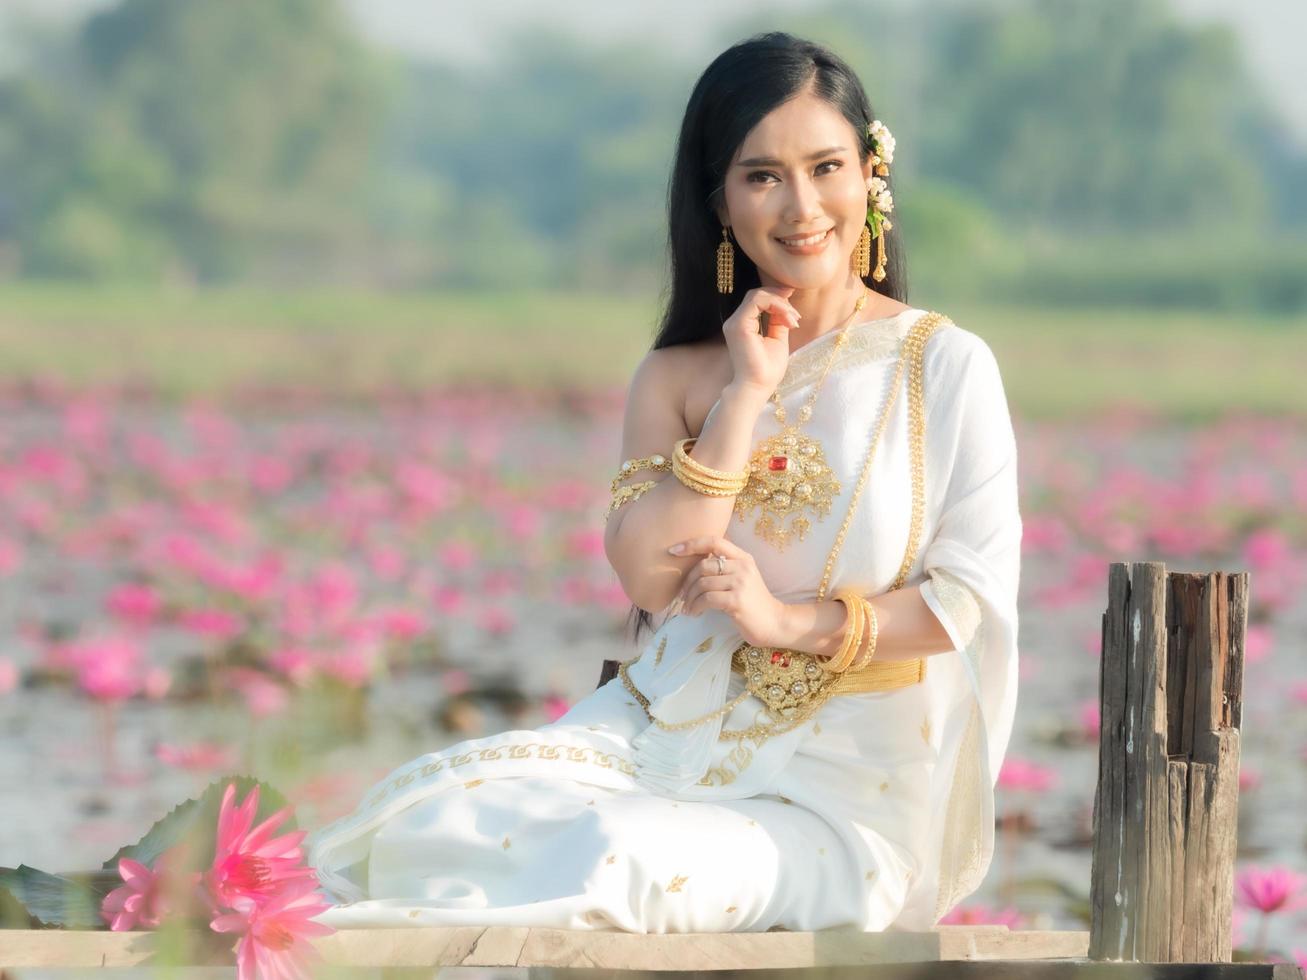 una elegante mujer tailandesa con ropa tradicional tailandesa adornada con adornos dorados, sentada en un puente de madera en un campo de loto foto